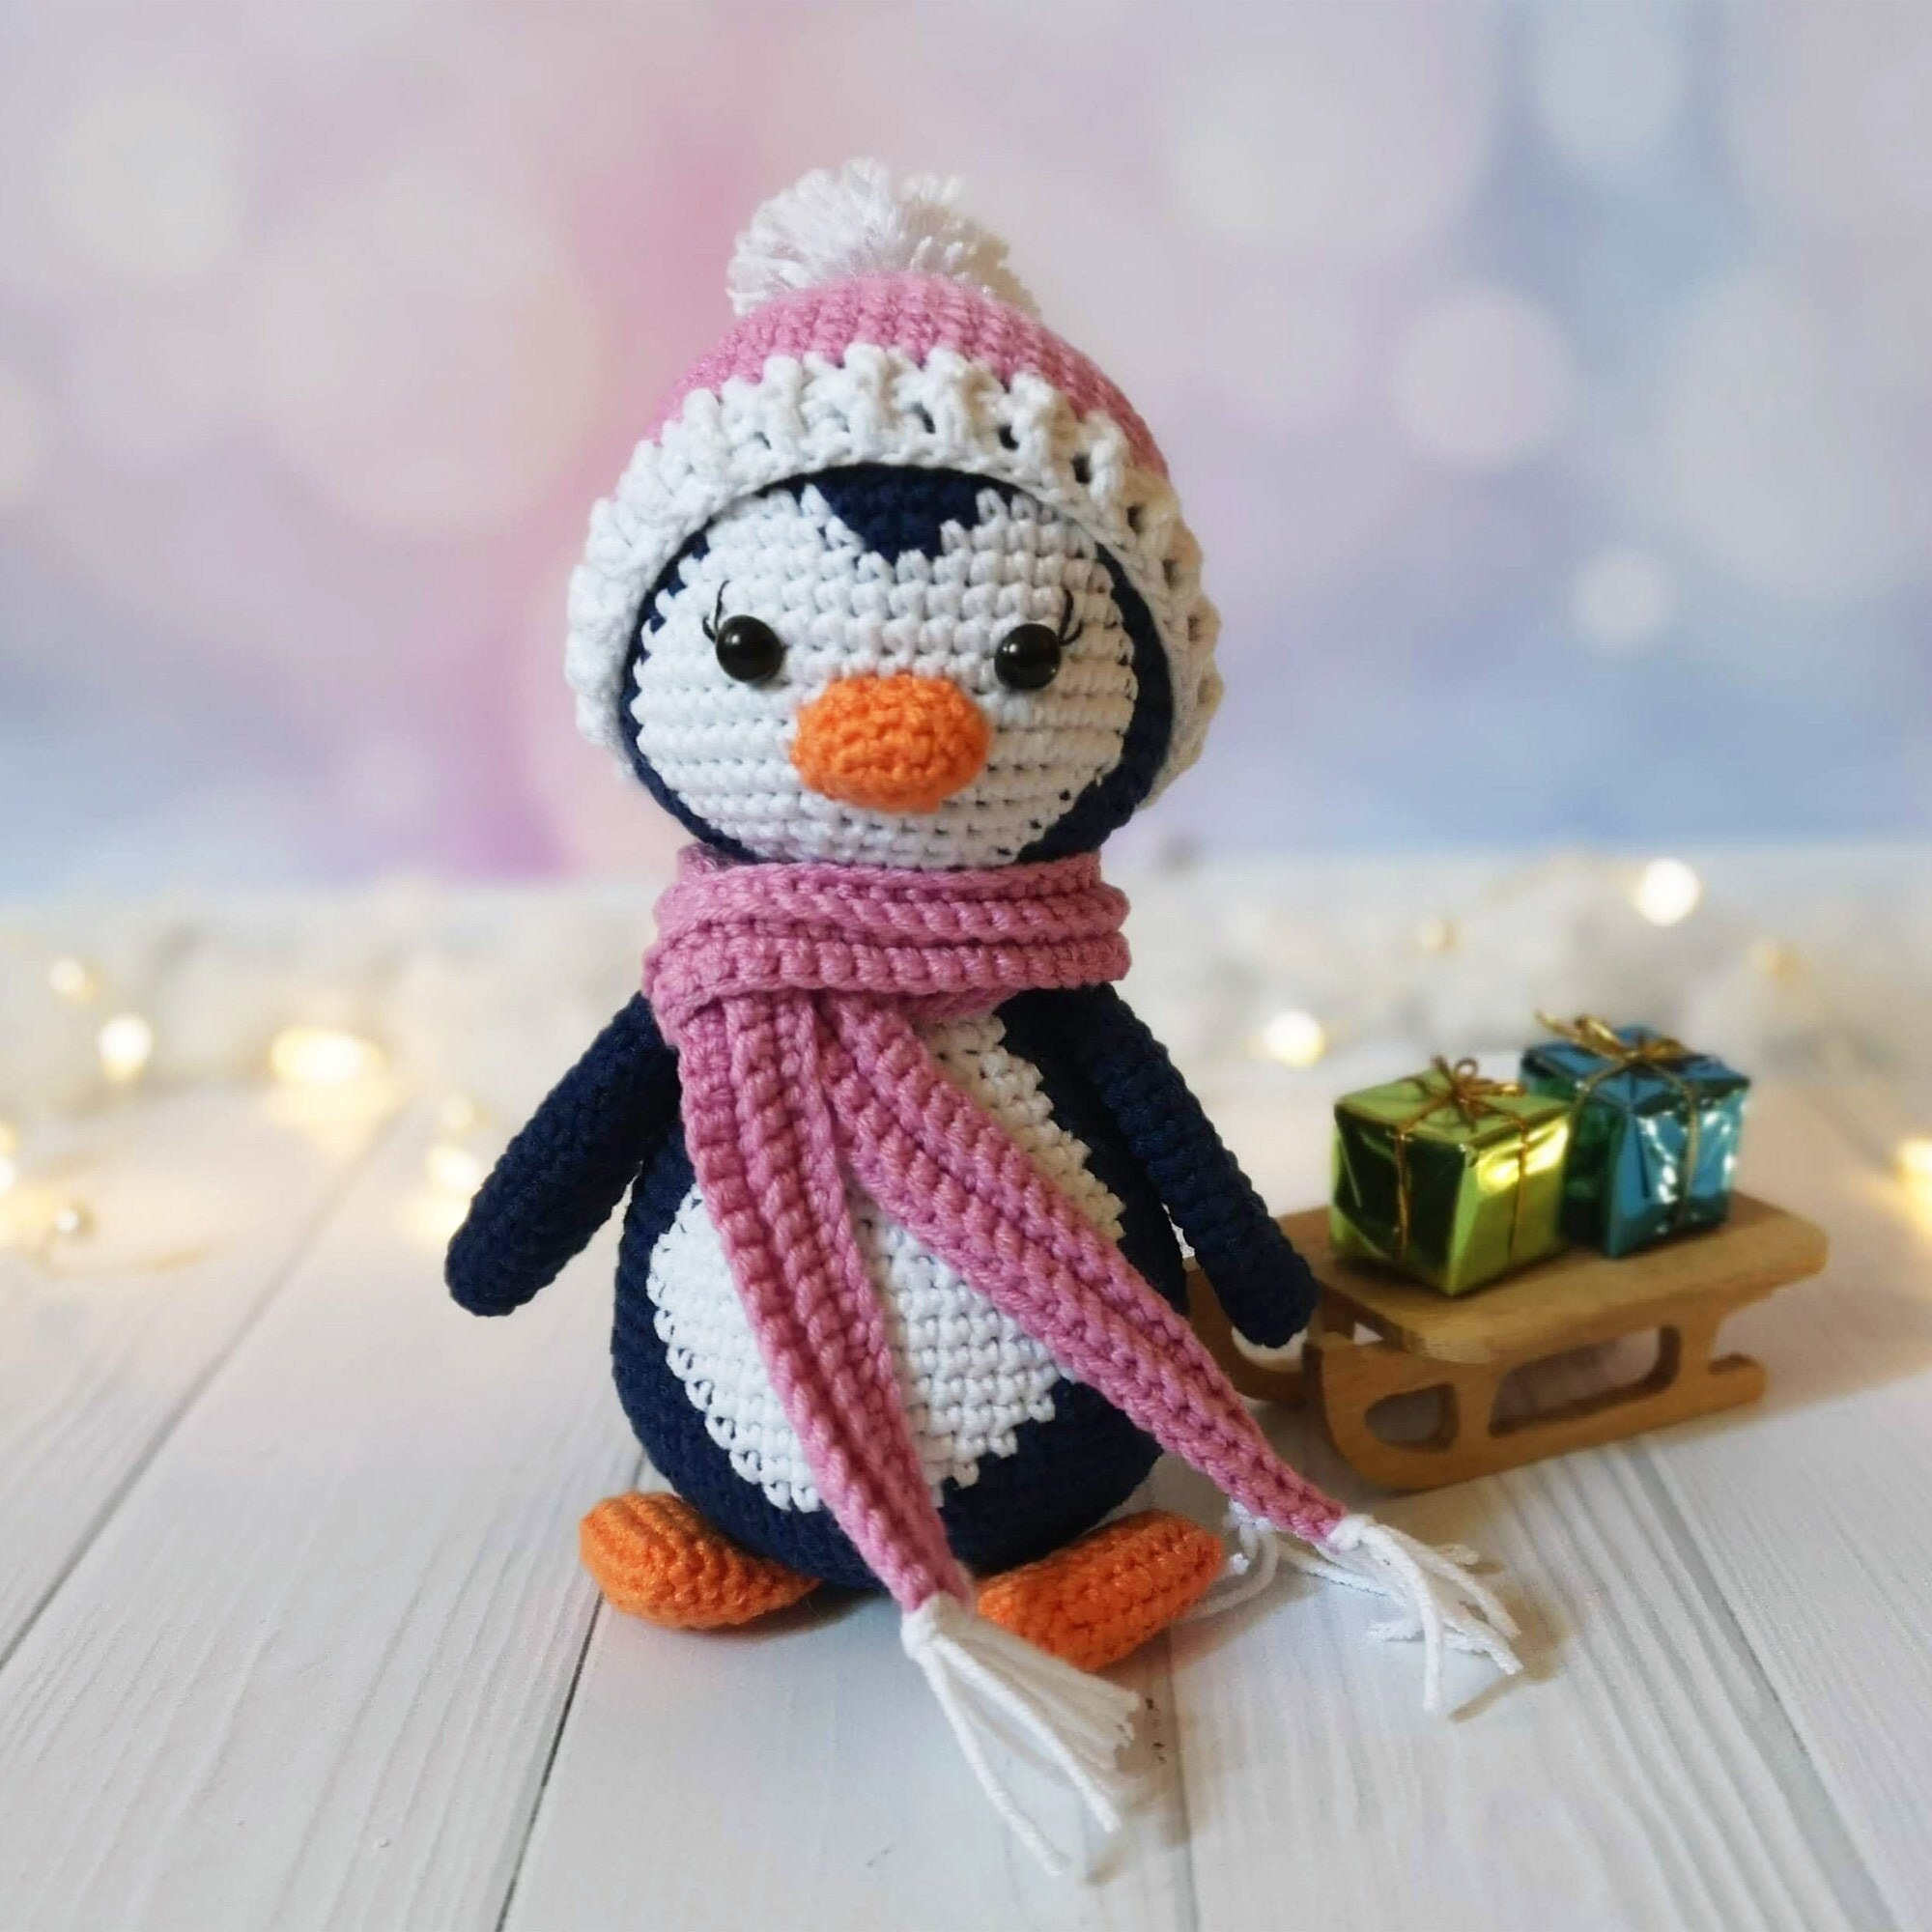 Kit crochet amigurumi Ricorumi - pingouin de noel